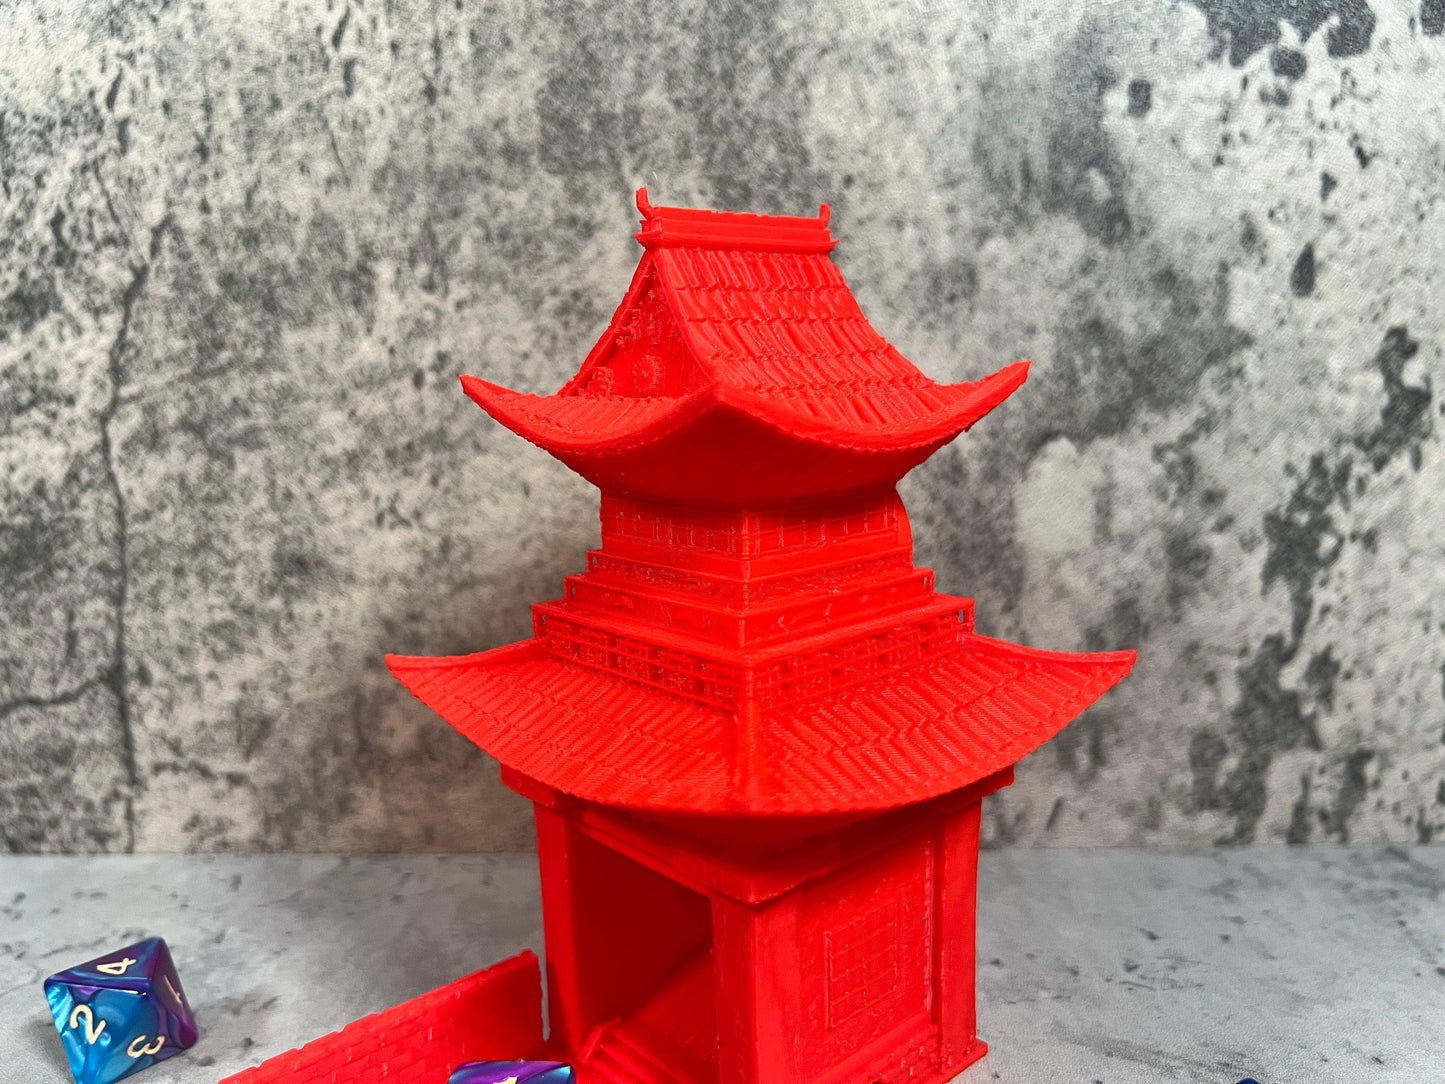 
                  
                    Shogun Dice Tower | Tiny Dice Tower
                  
                